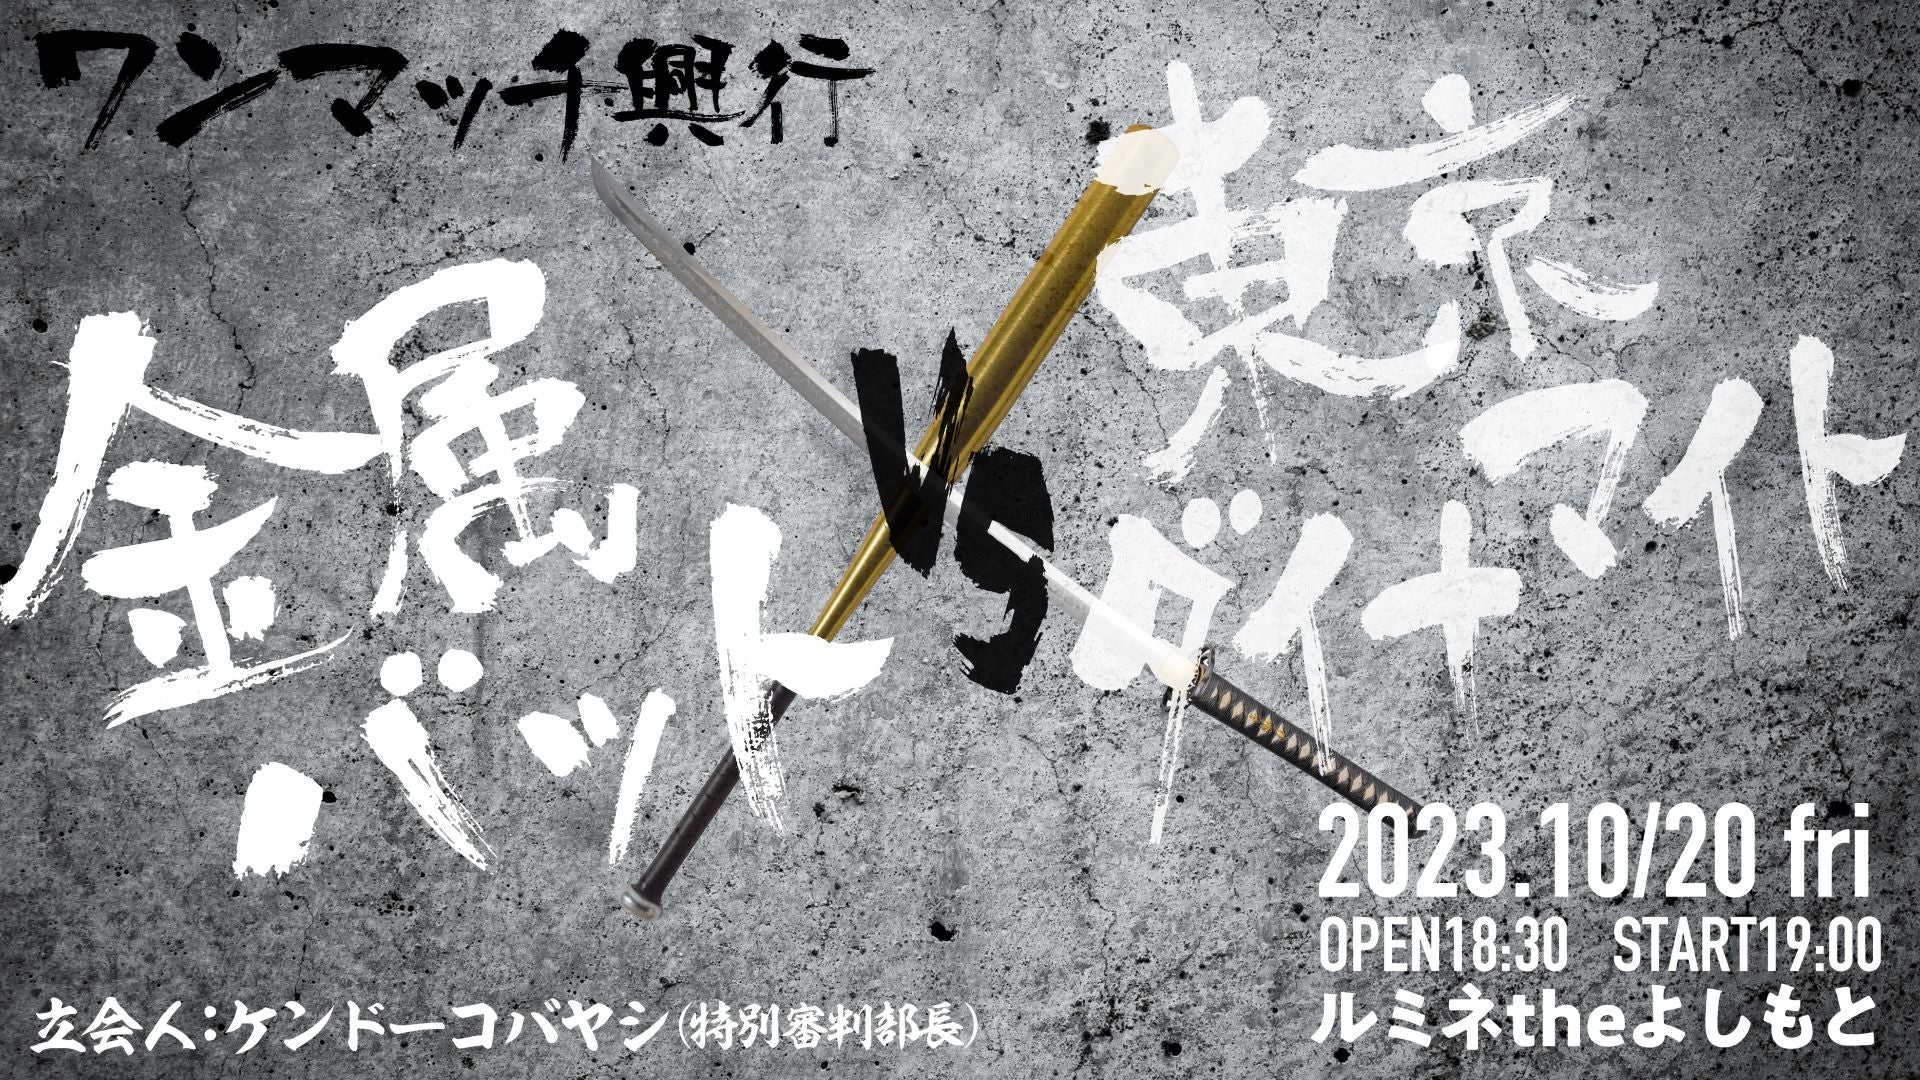 8・20金属バットvs東京ダイナマイト ワンマッチ興行』が好評につき10月 